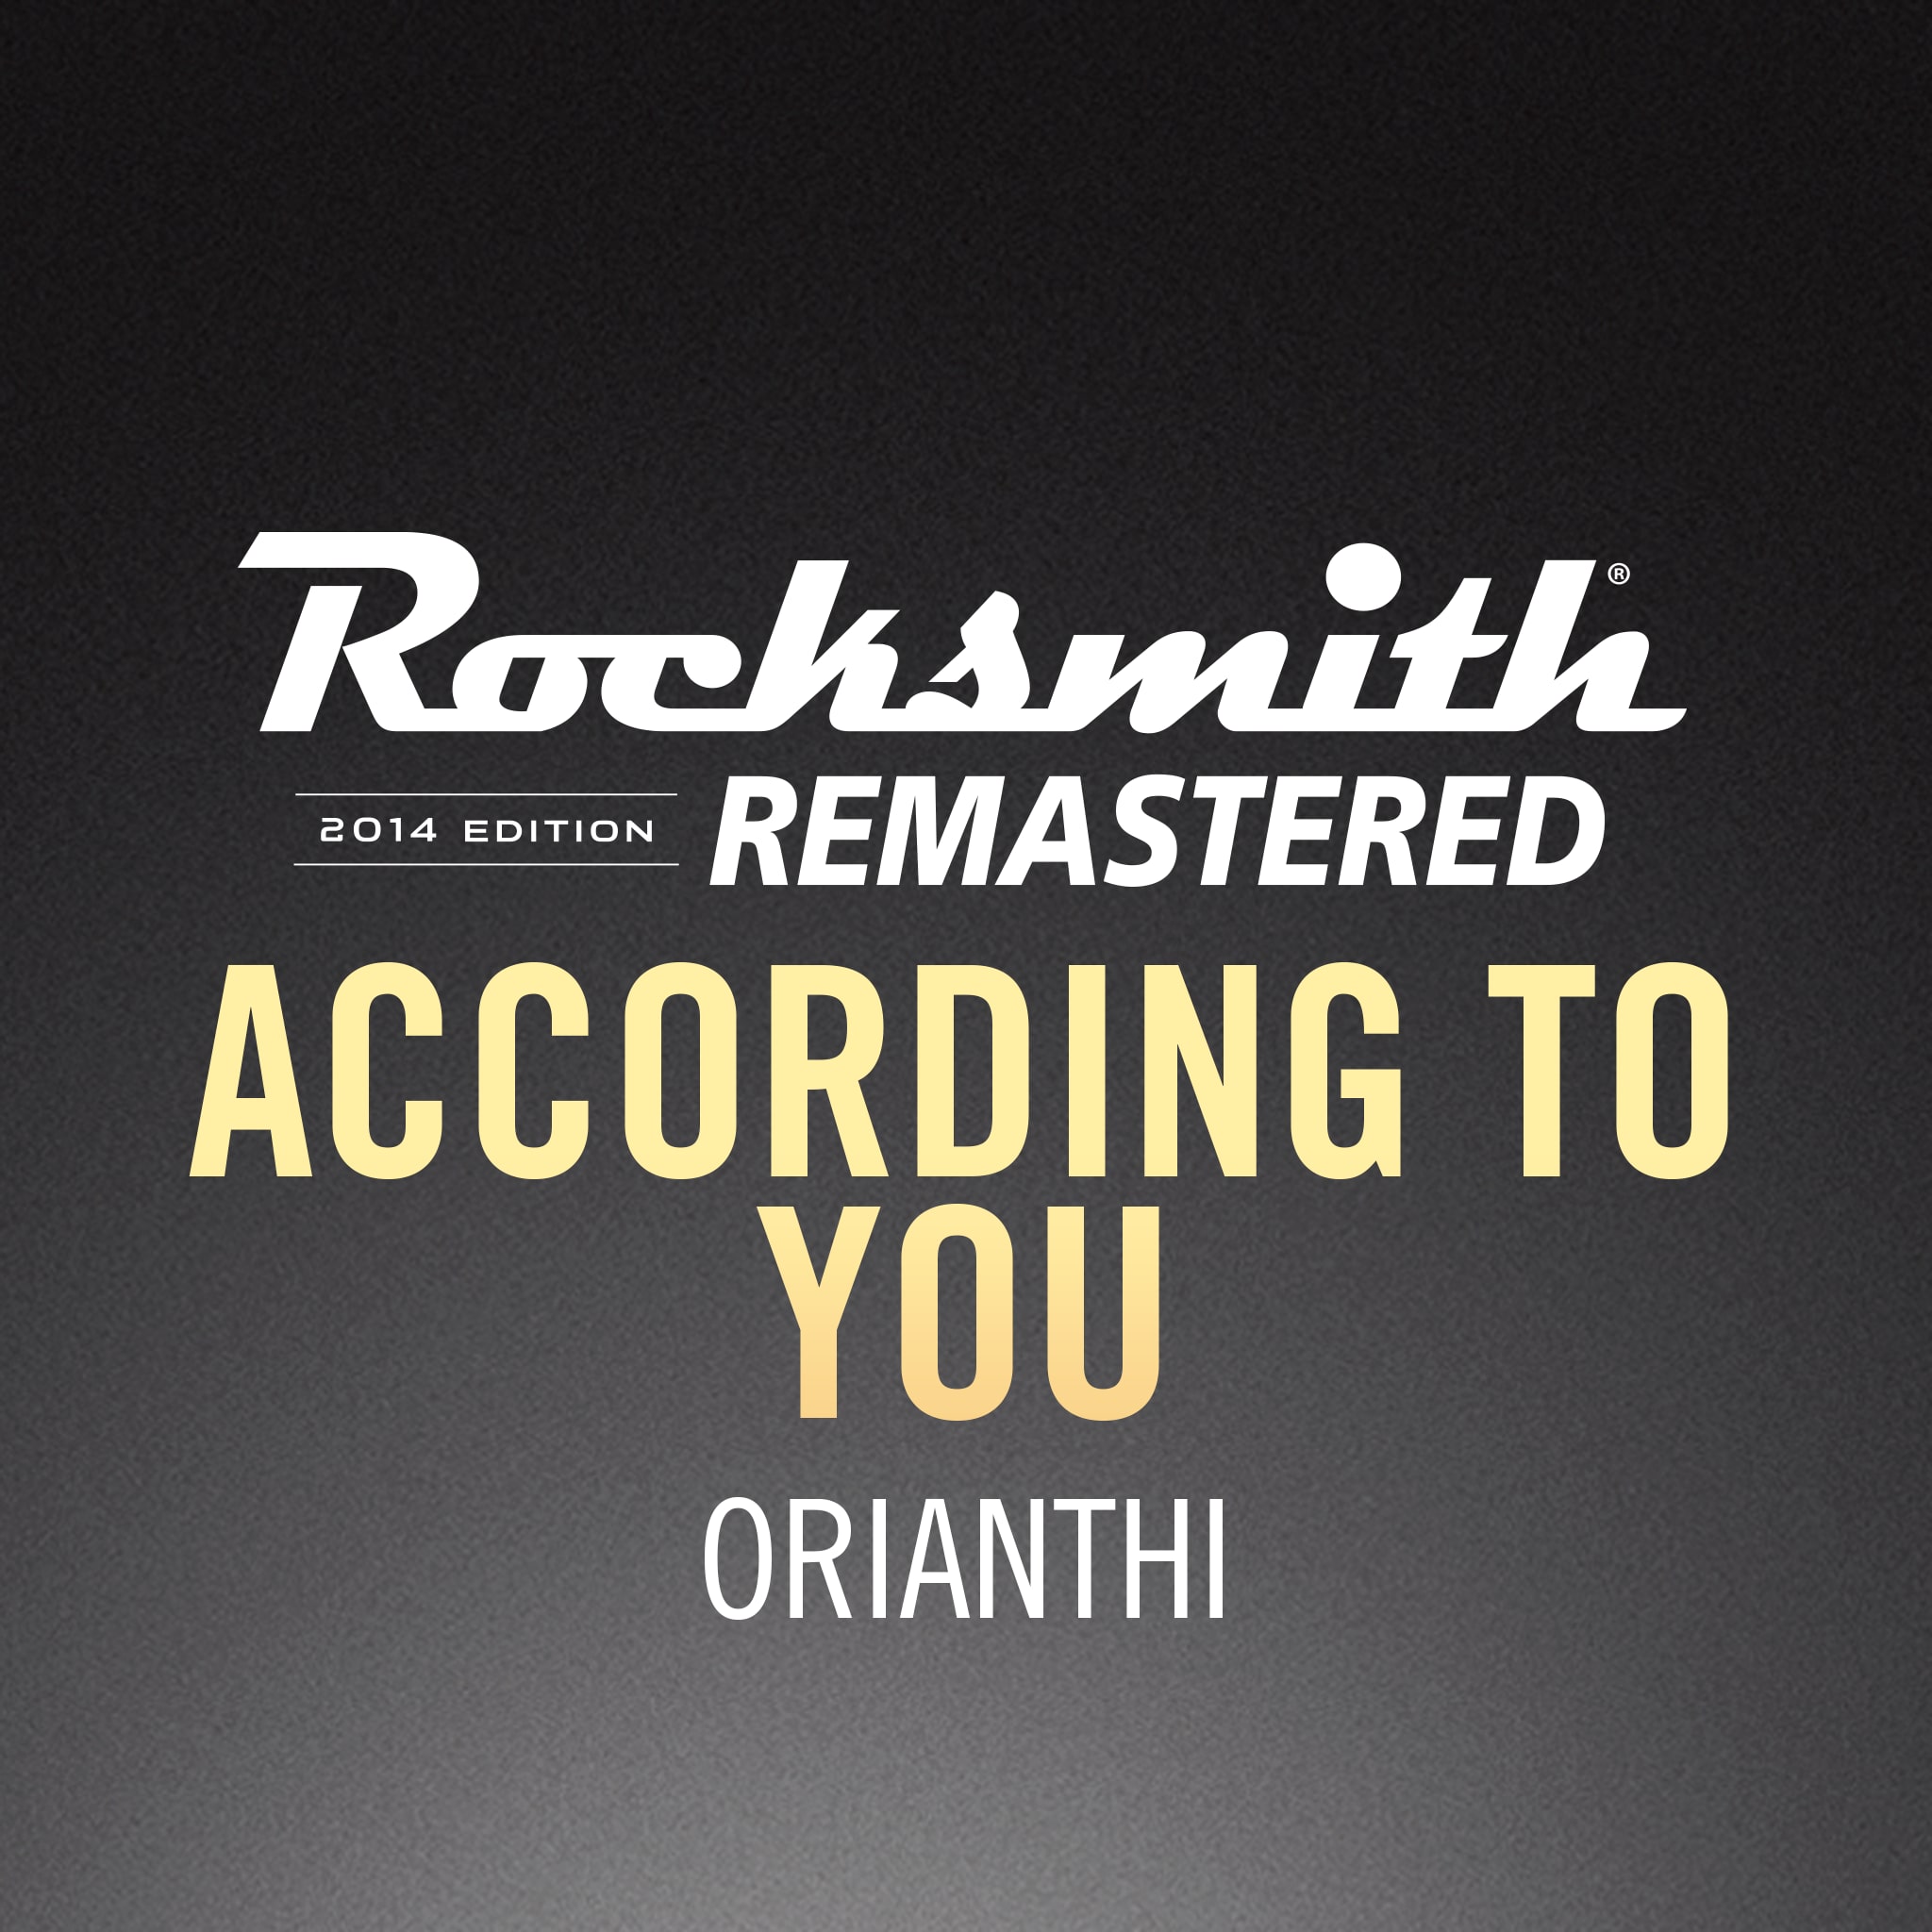 Rocksmith 2014 - Orianthi - According to You